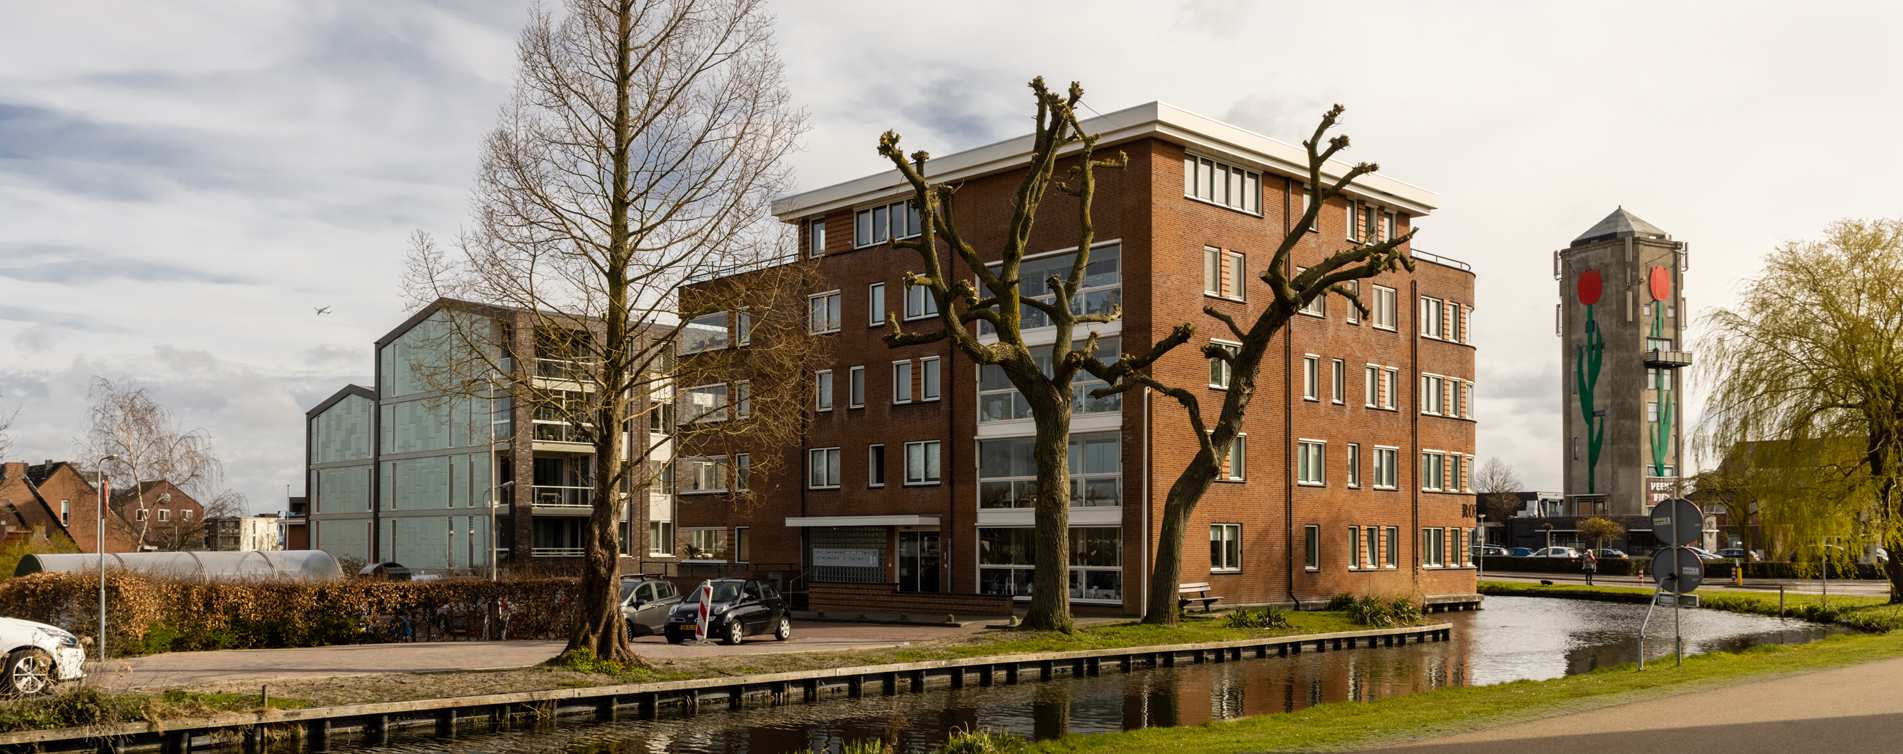 De toren met de tulp in Roelofarendsveen - Van der Meer Adviesgroep in Roelofarendsveen